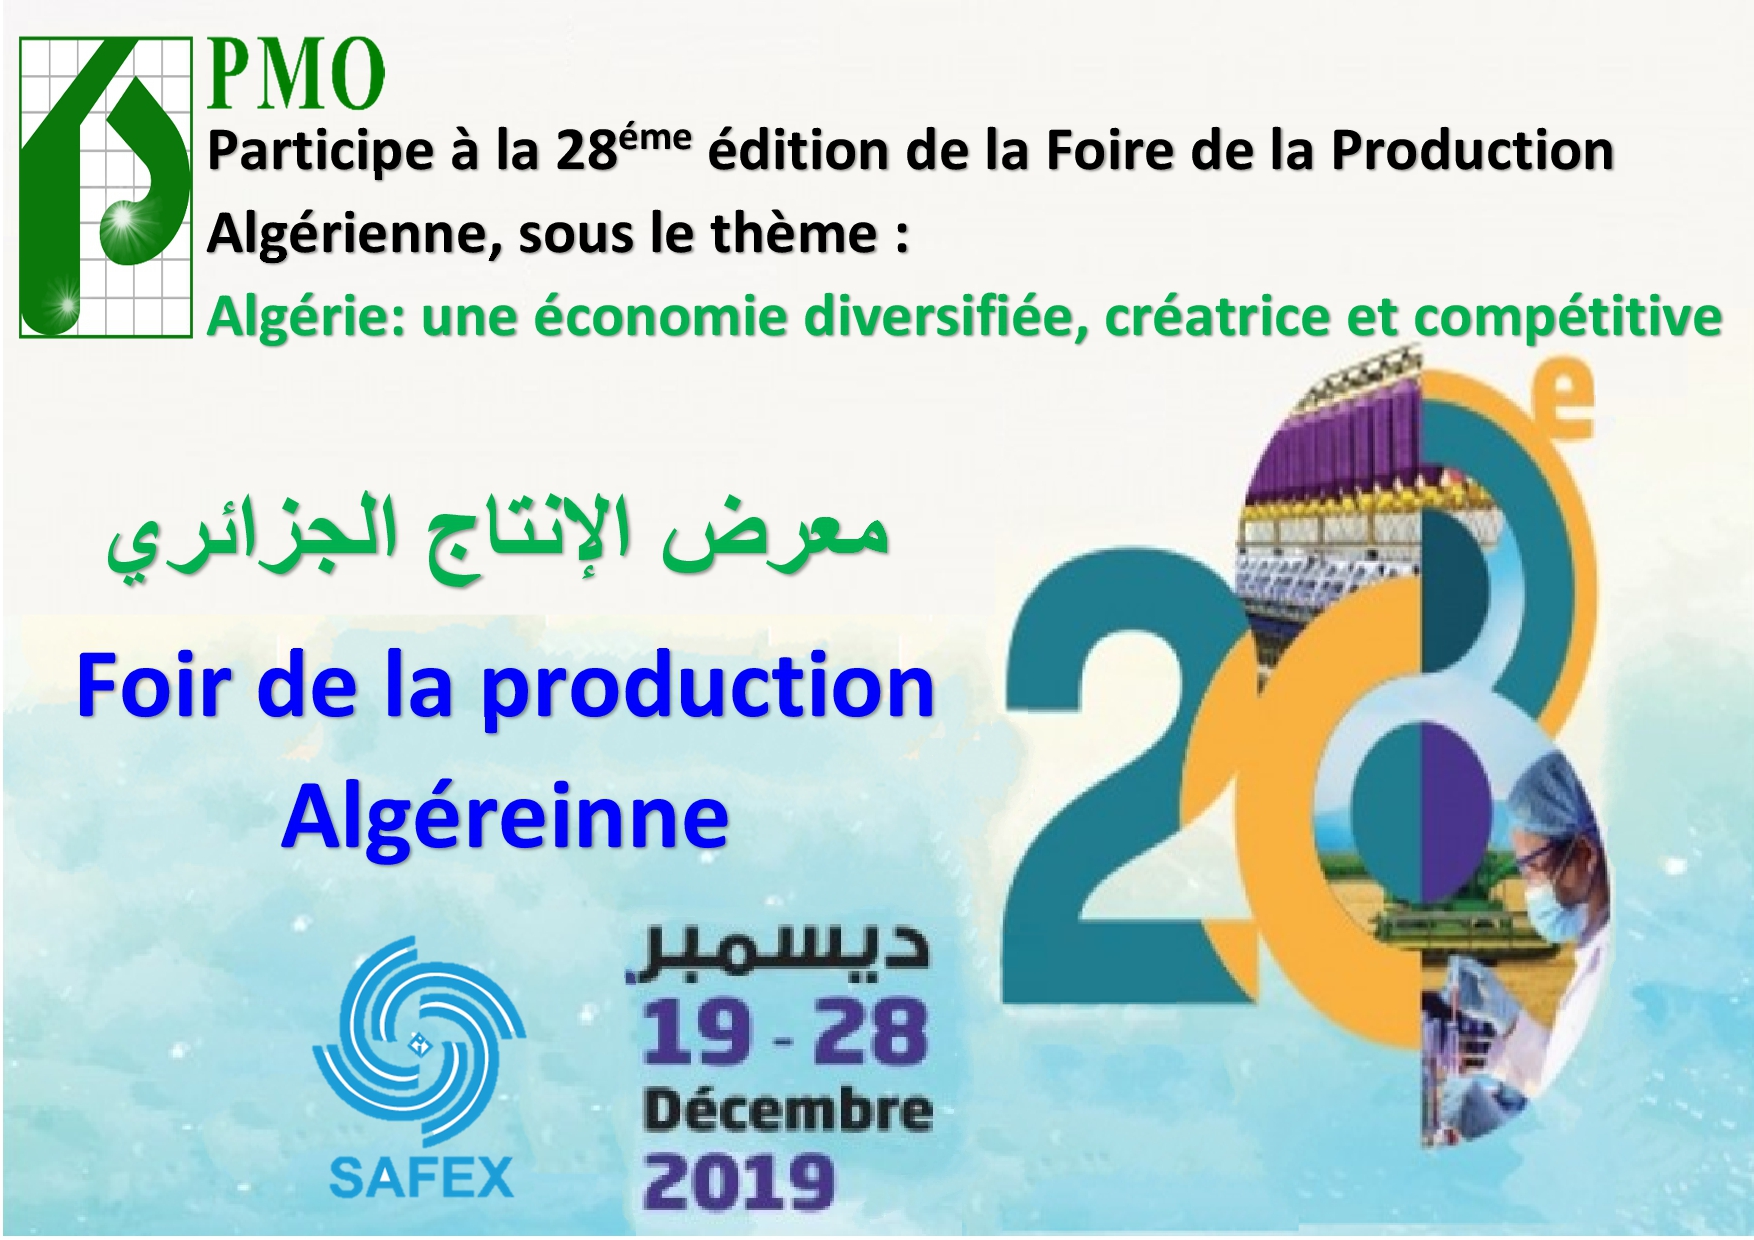 PMO Participe à la 28éme édition de la Foire de la Production safex